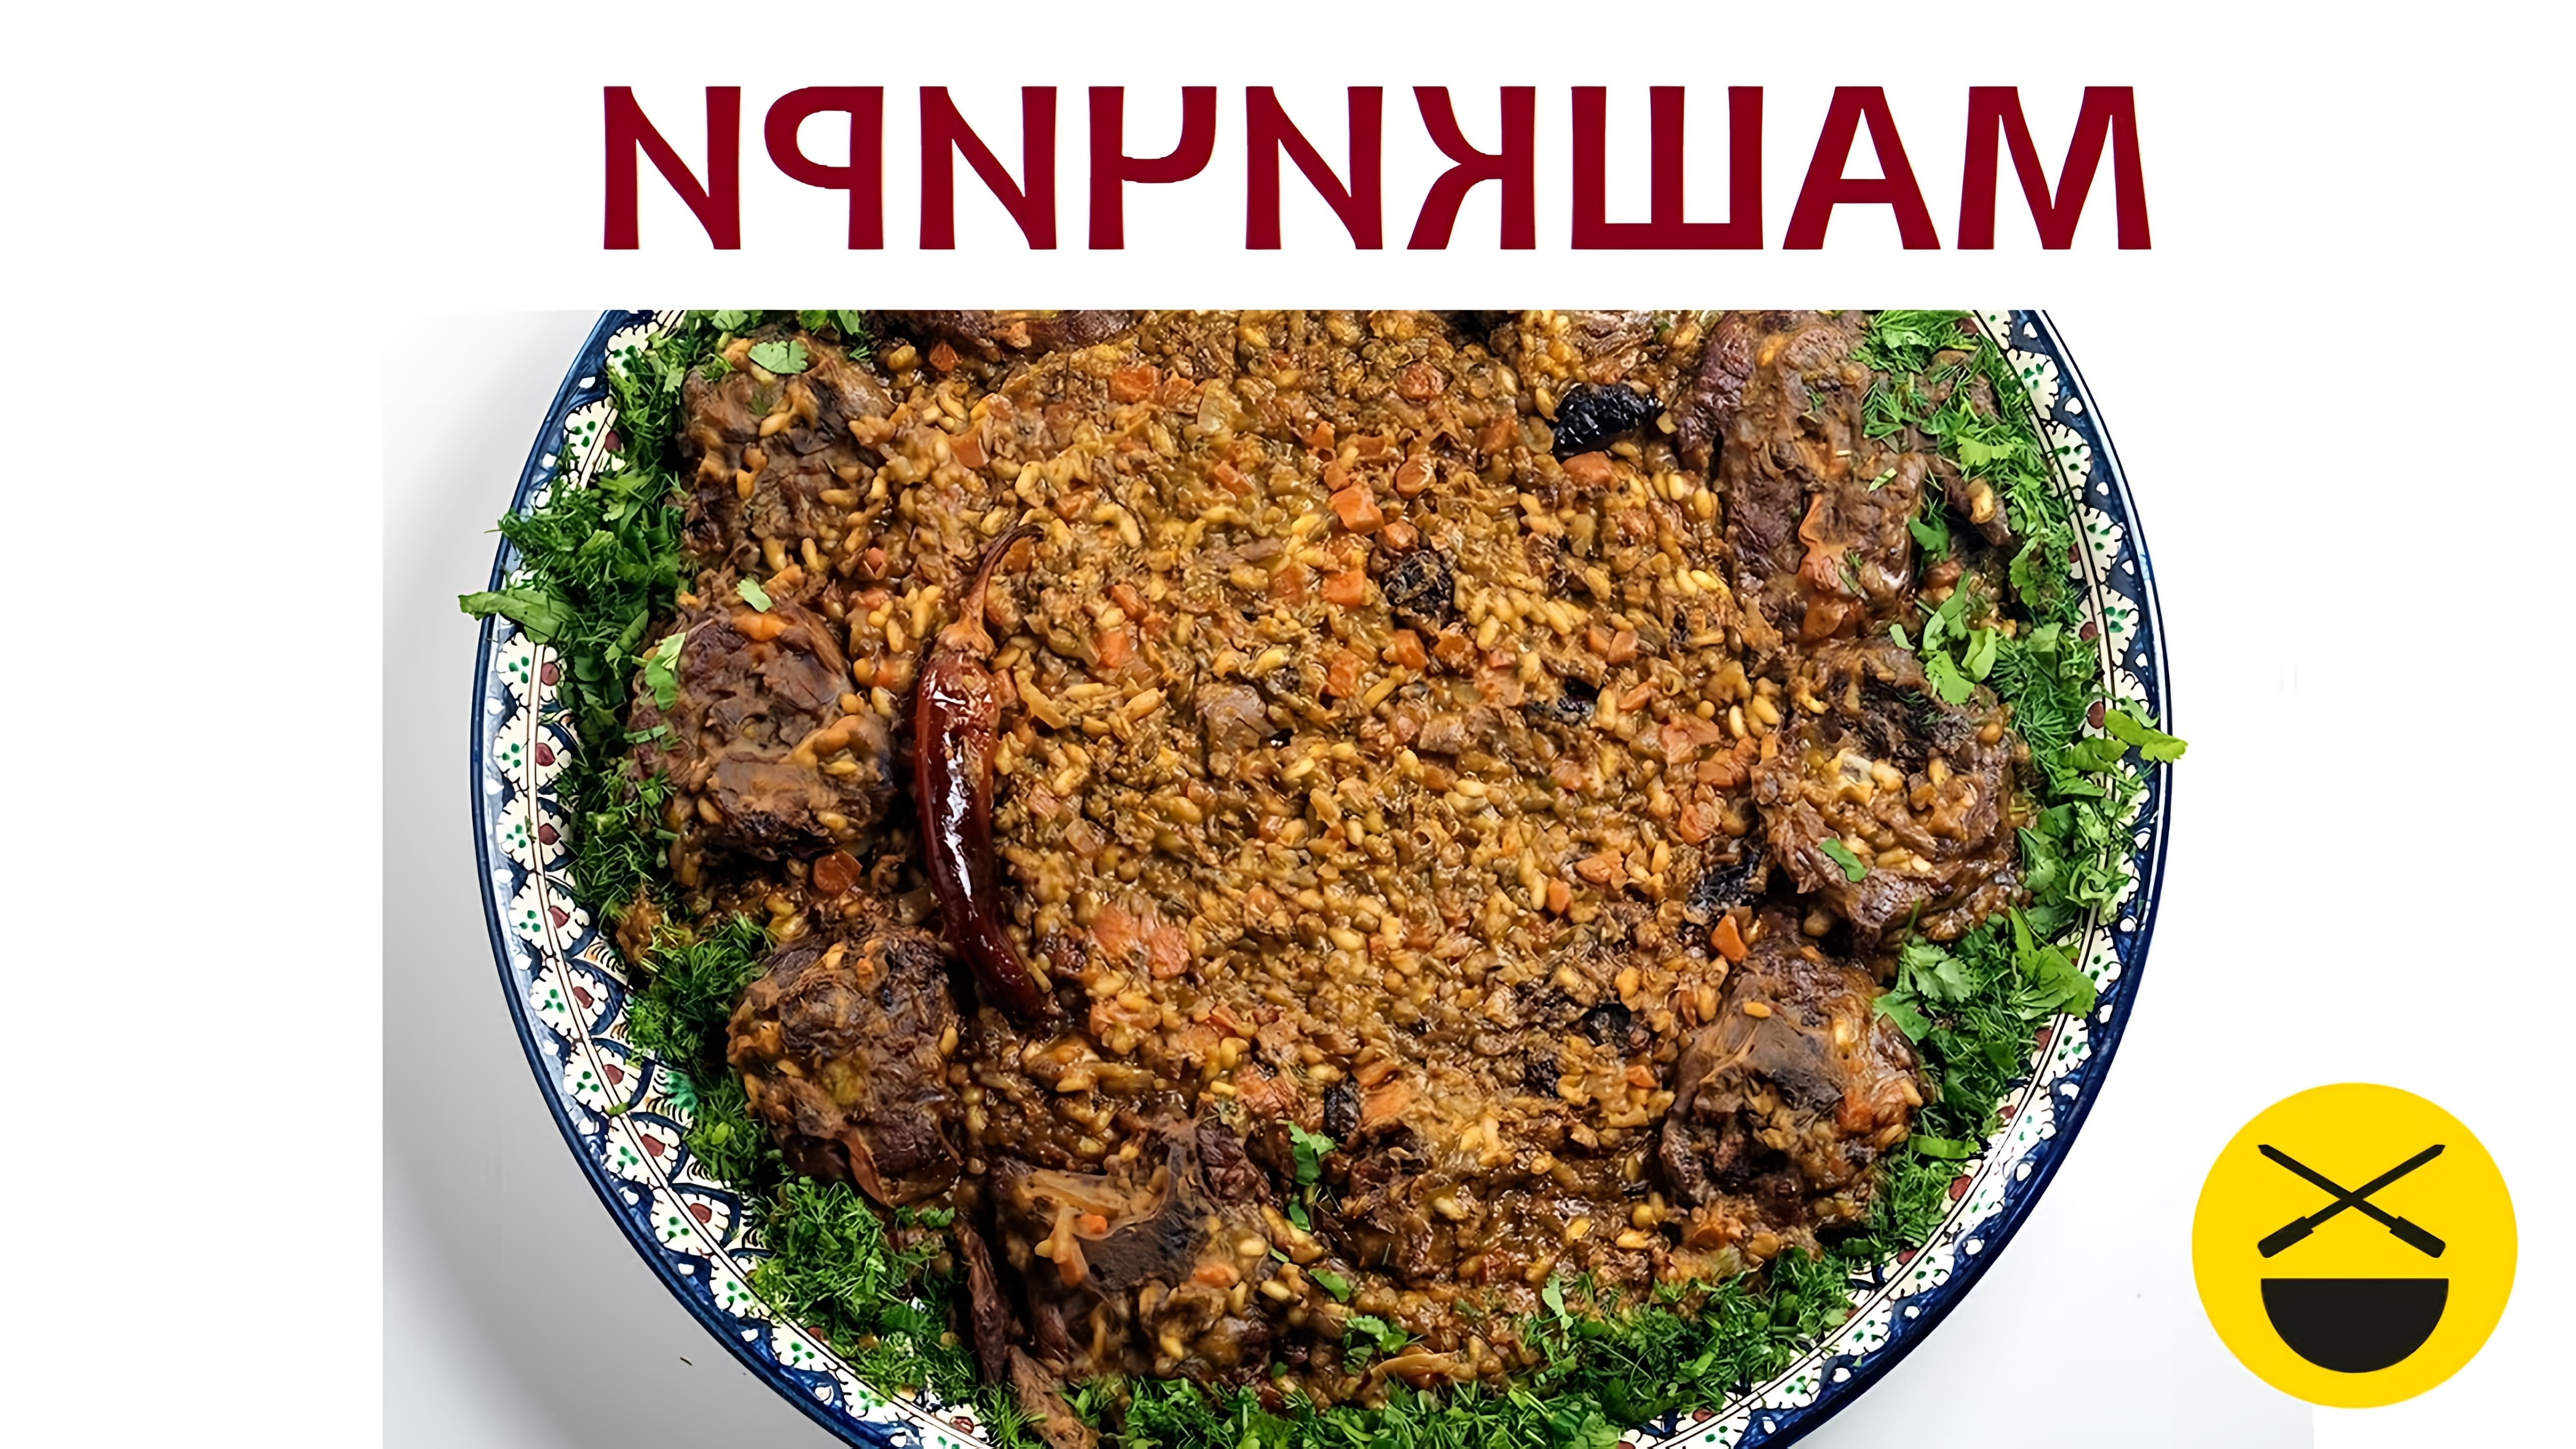 В данном видео демонстрируется процесс приготовления узбекского блюда машкичири